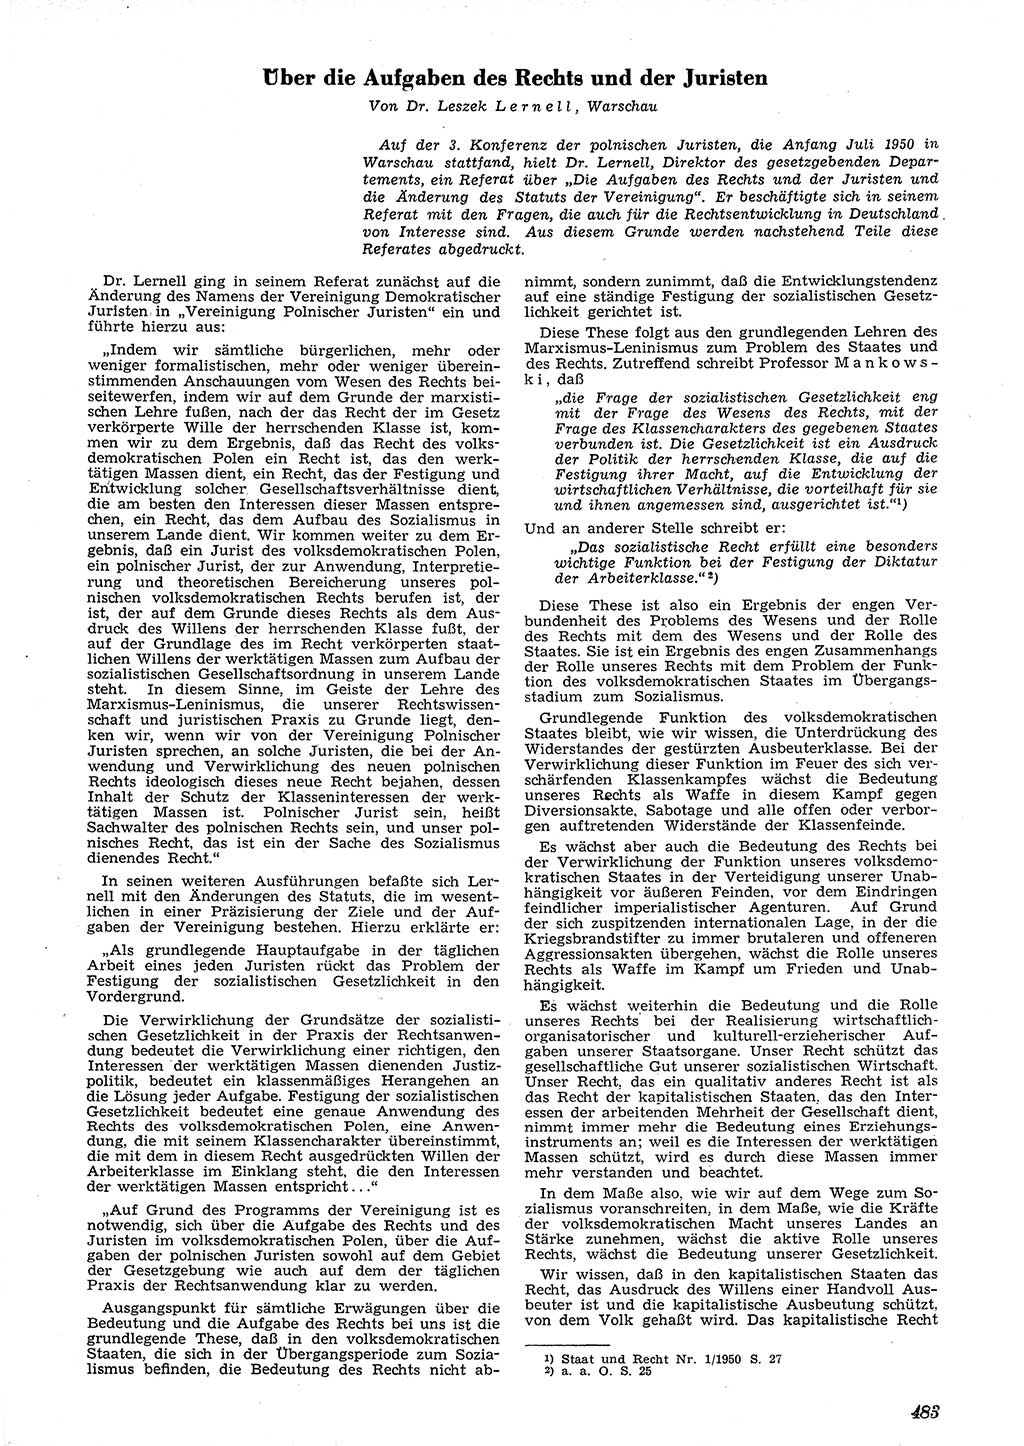 Neue Justiz (NJ), Zeitschrift für Recht und Rechtswissenschaft [Deutsche Demokratische Republik (DDR)], 4. Jahrgang 1950, Seite 483 (NJ DDR 1950, S. 483)